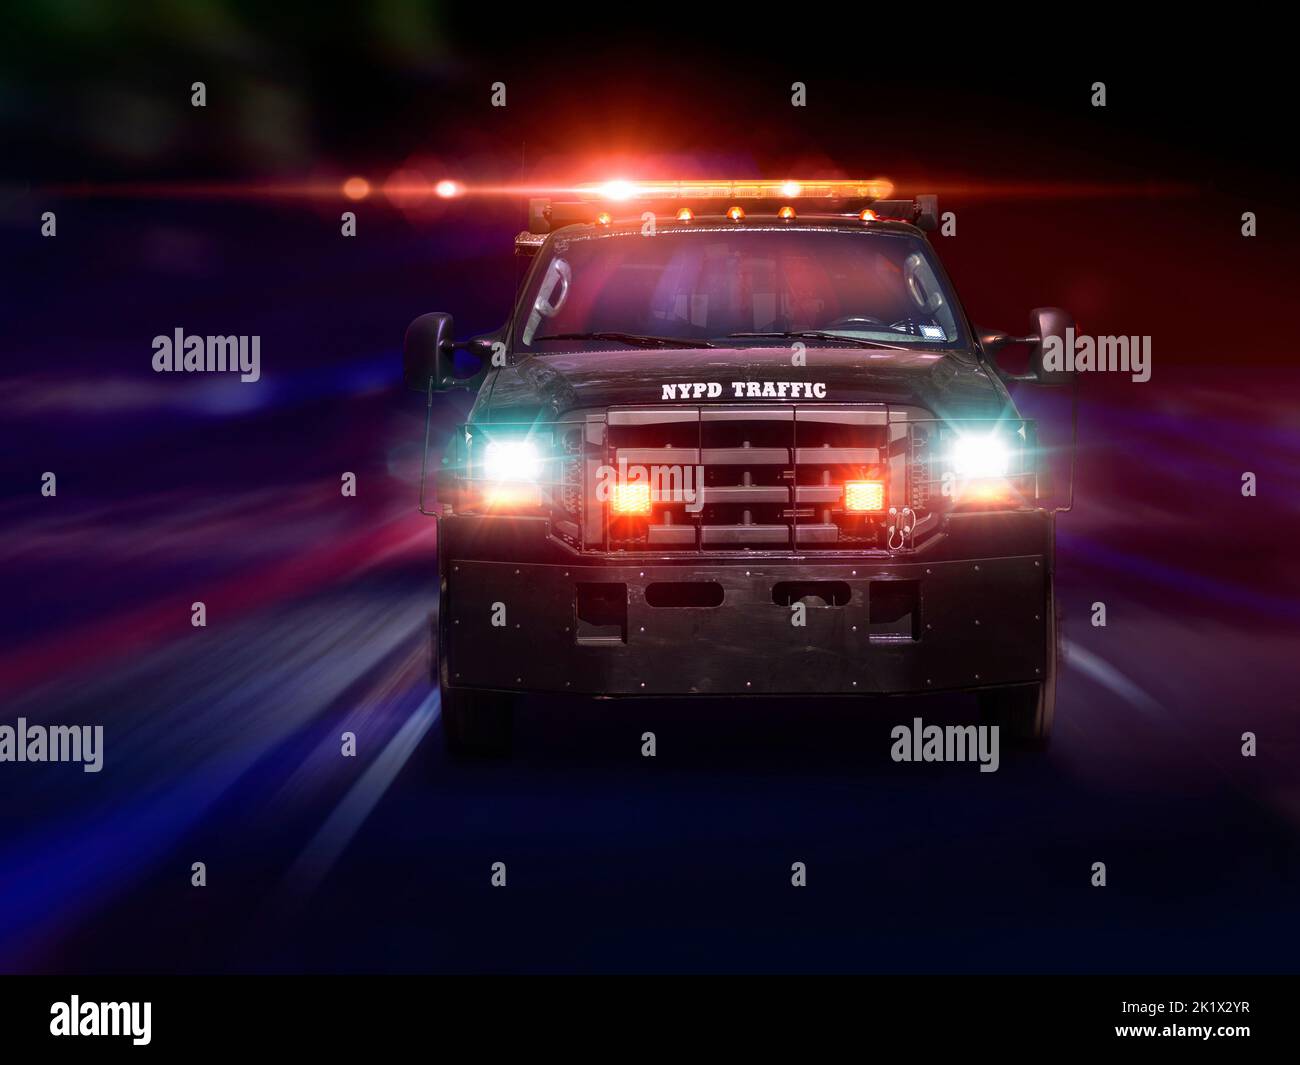 NYPD New York Police Department Verkehrsfahrzeug mit Ampel auf Fahrt schnell zu einem Vorfall in der Nacht. New York City NYC Vereinigte Staaten von Amerika USA Stockfoto